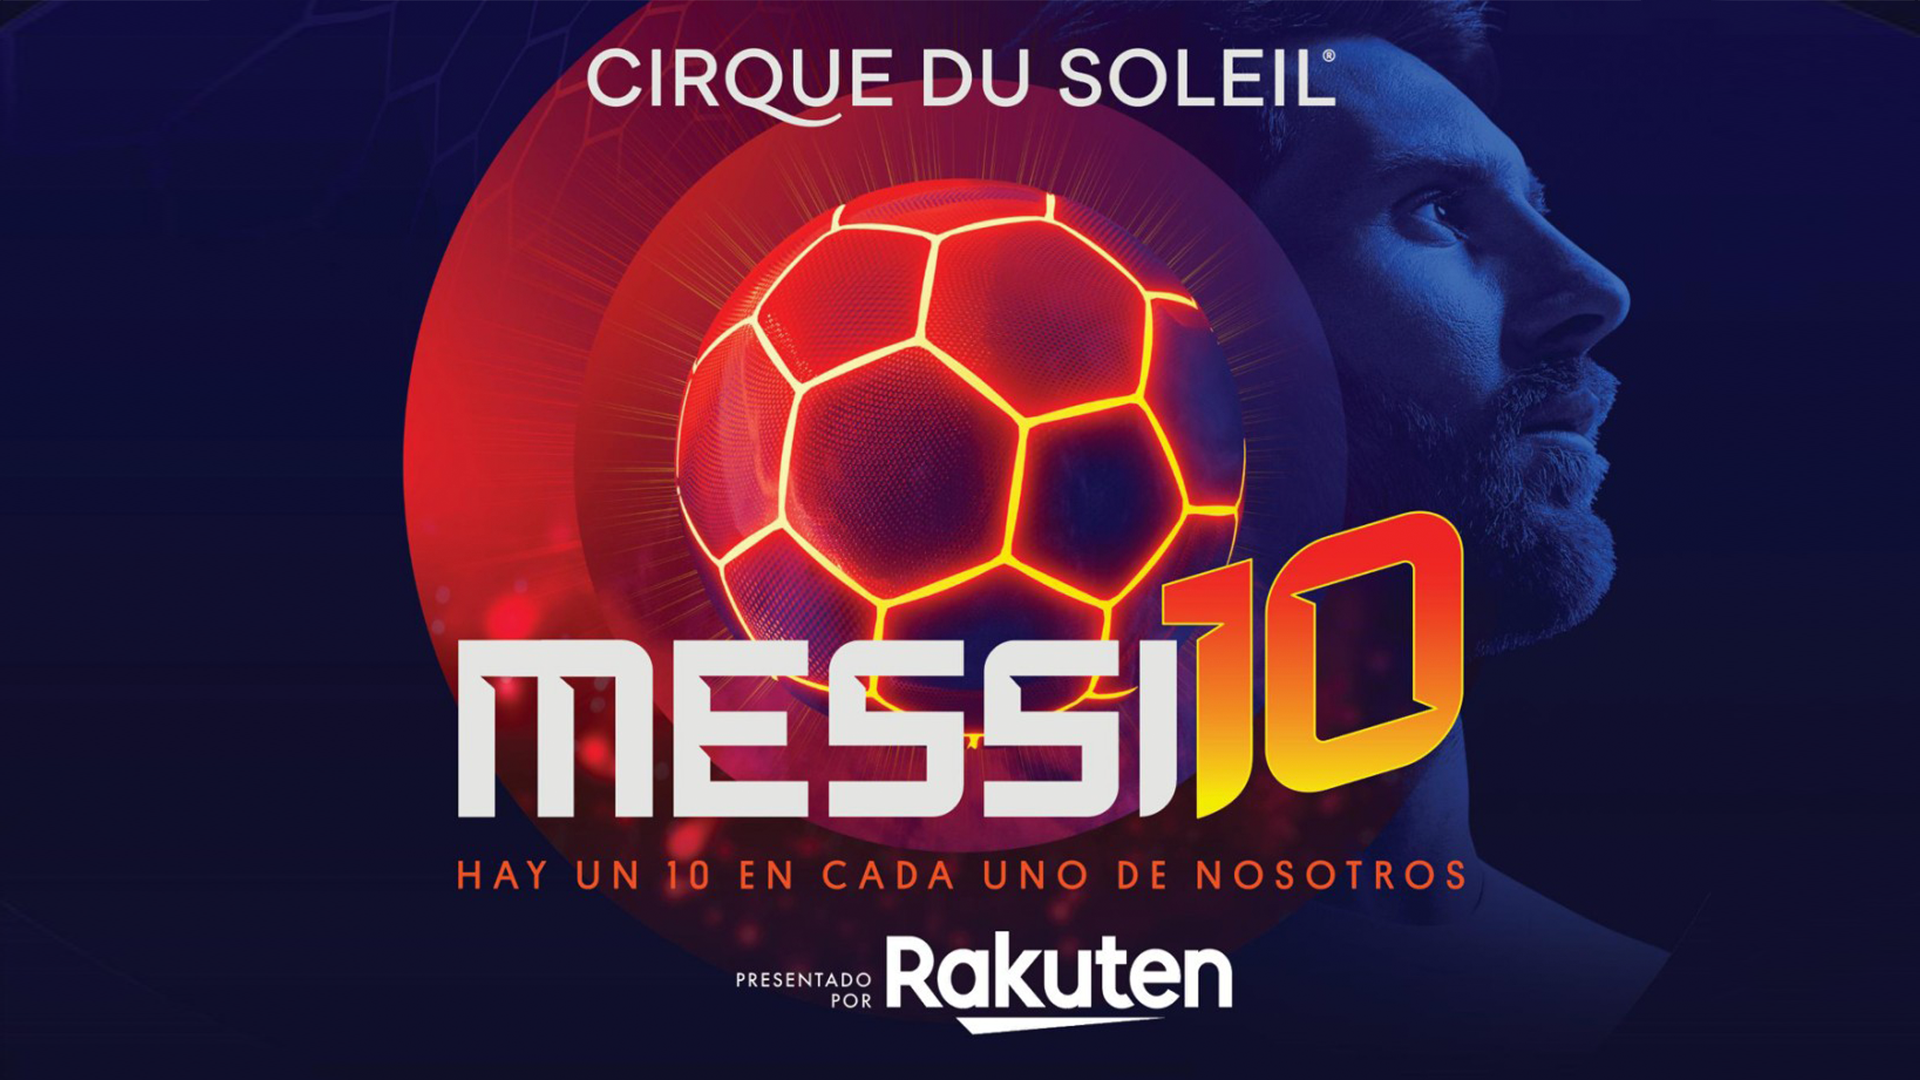 楽天 シルク ドゥ ソレイユ最新作 Messi10 ワールドツアーのタイトルスポンサーに決定 楽天株式会社のプレスリリース